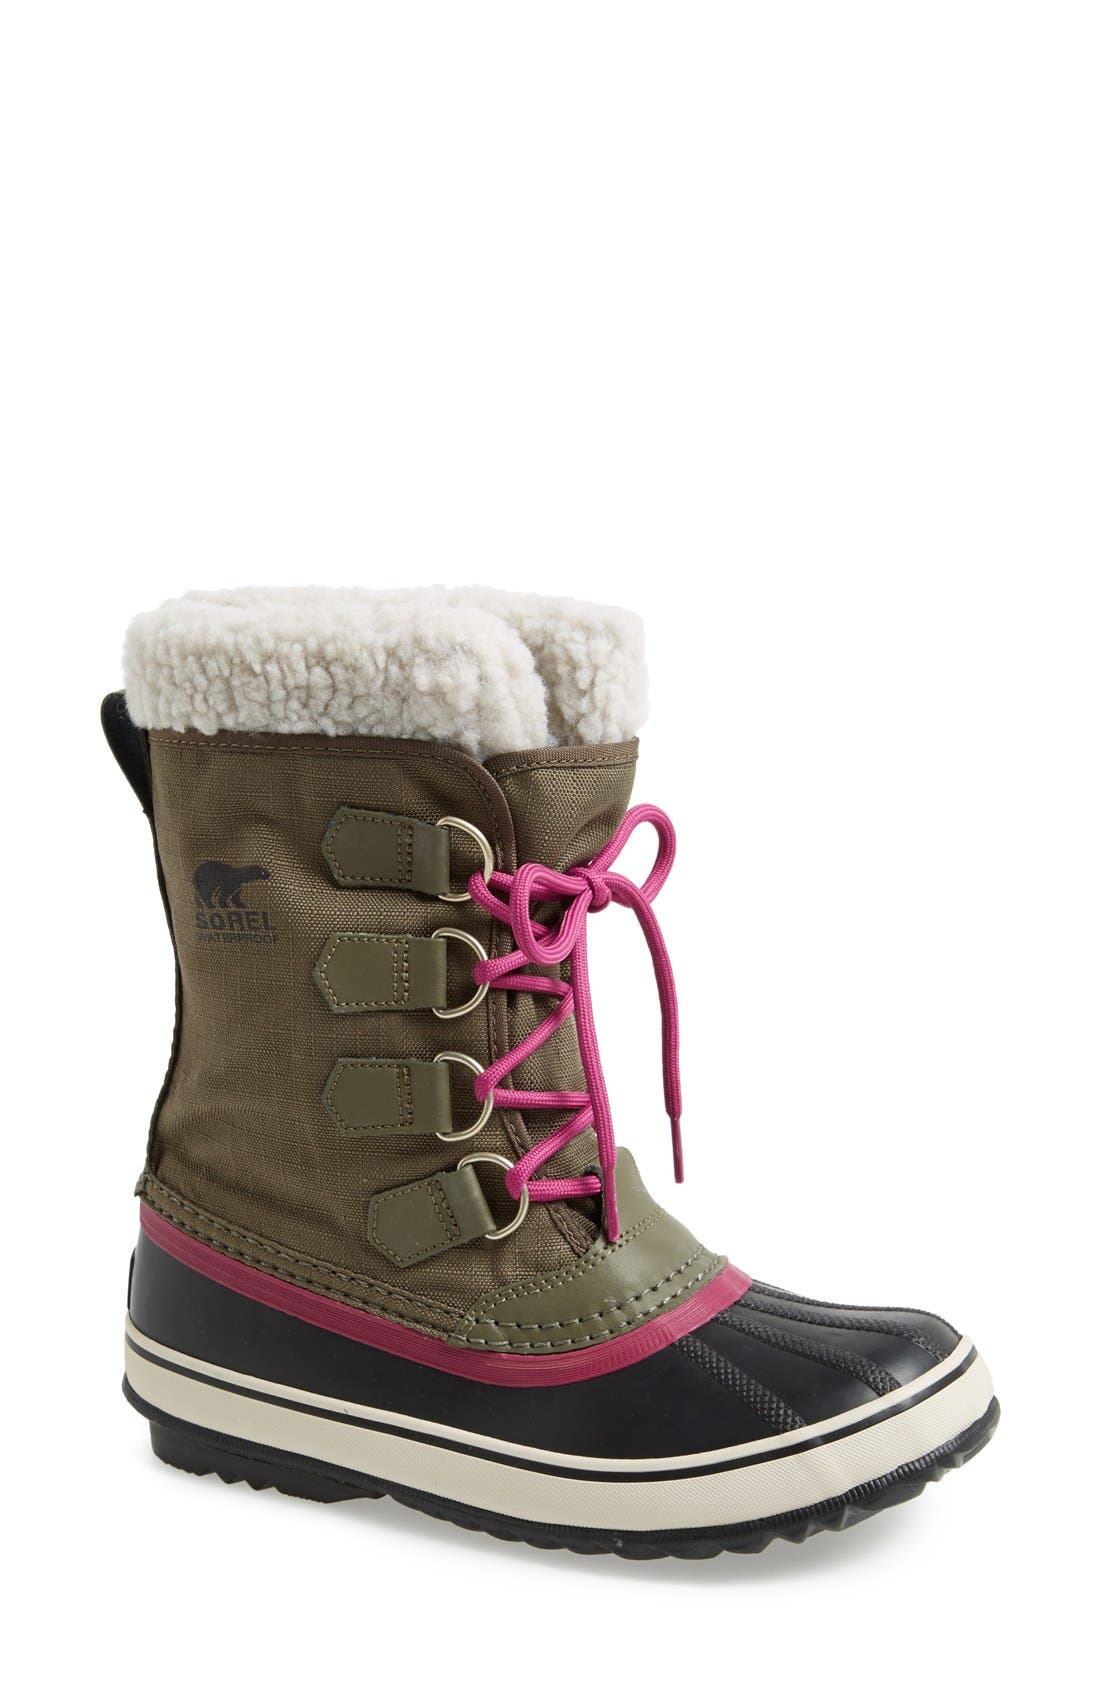 sorel winter carnival women's boots